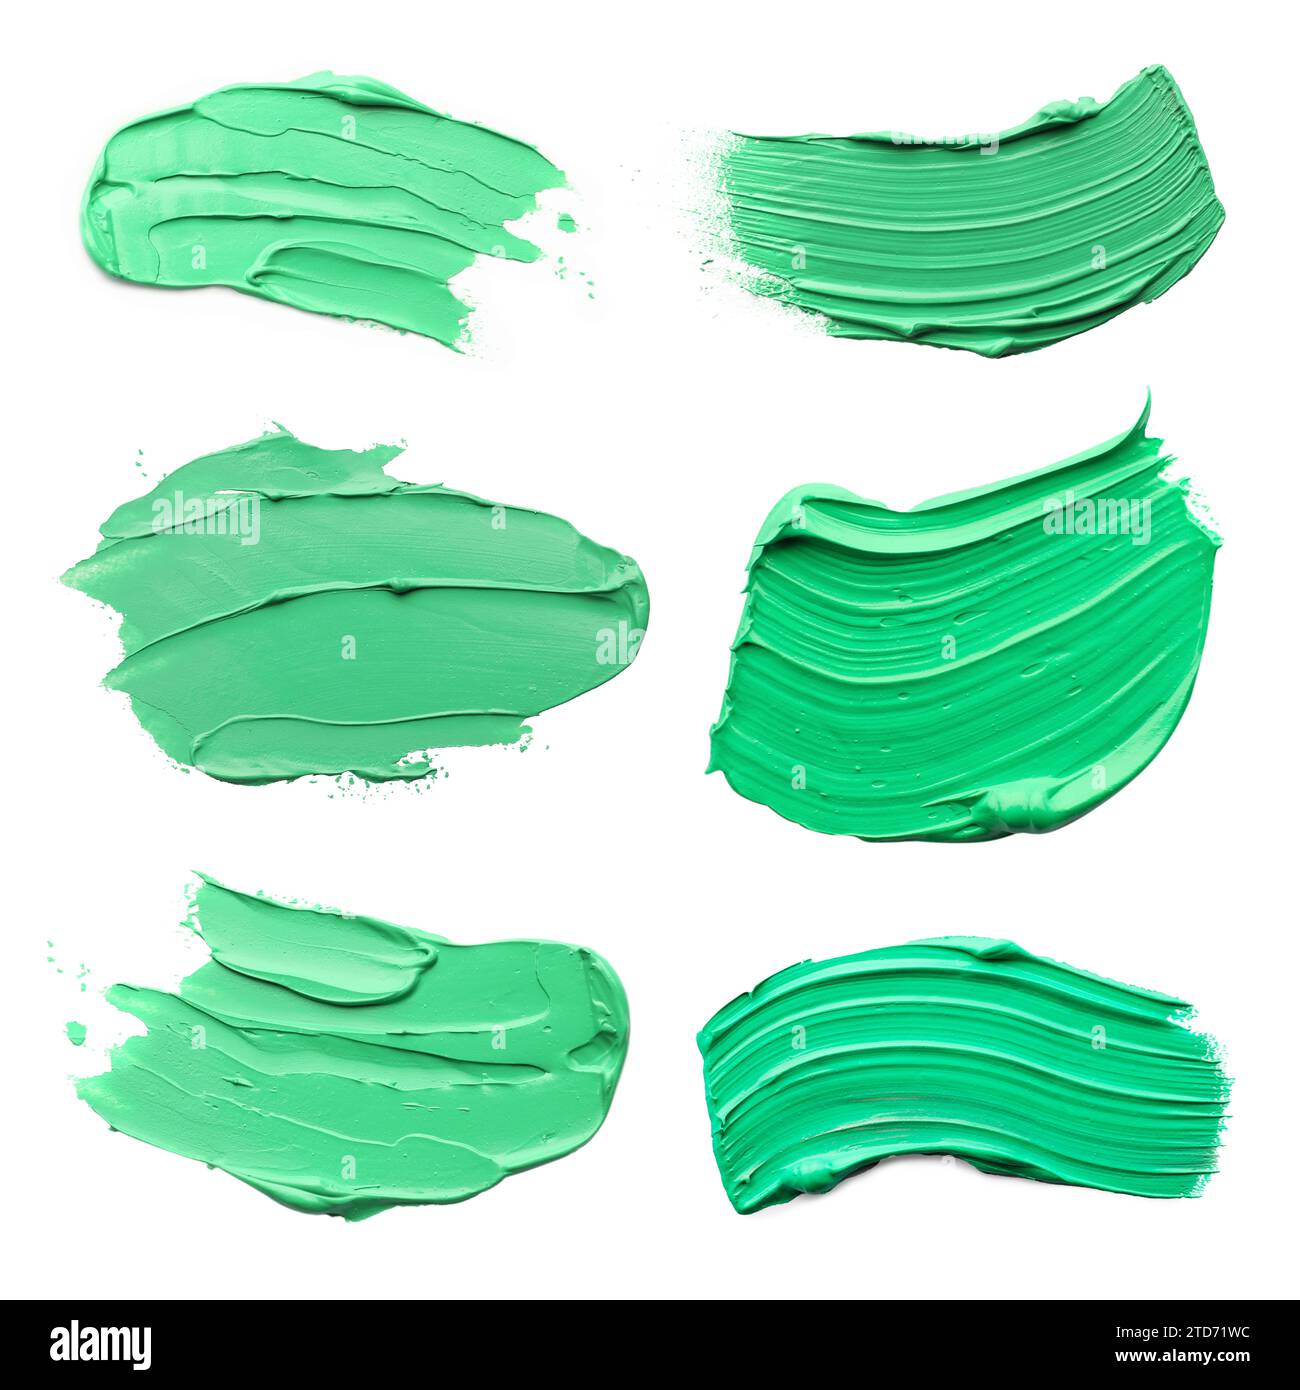 Coups de peinture à l'huile vert clair isolés sur blanc, vue de dessus Banque D'Images